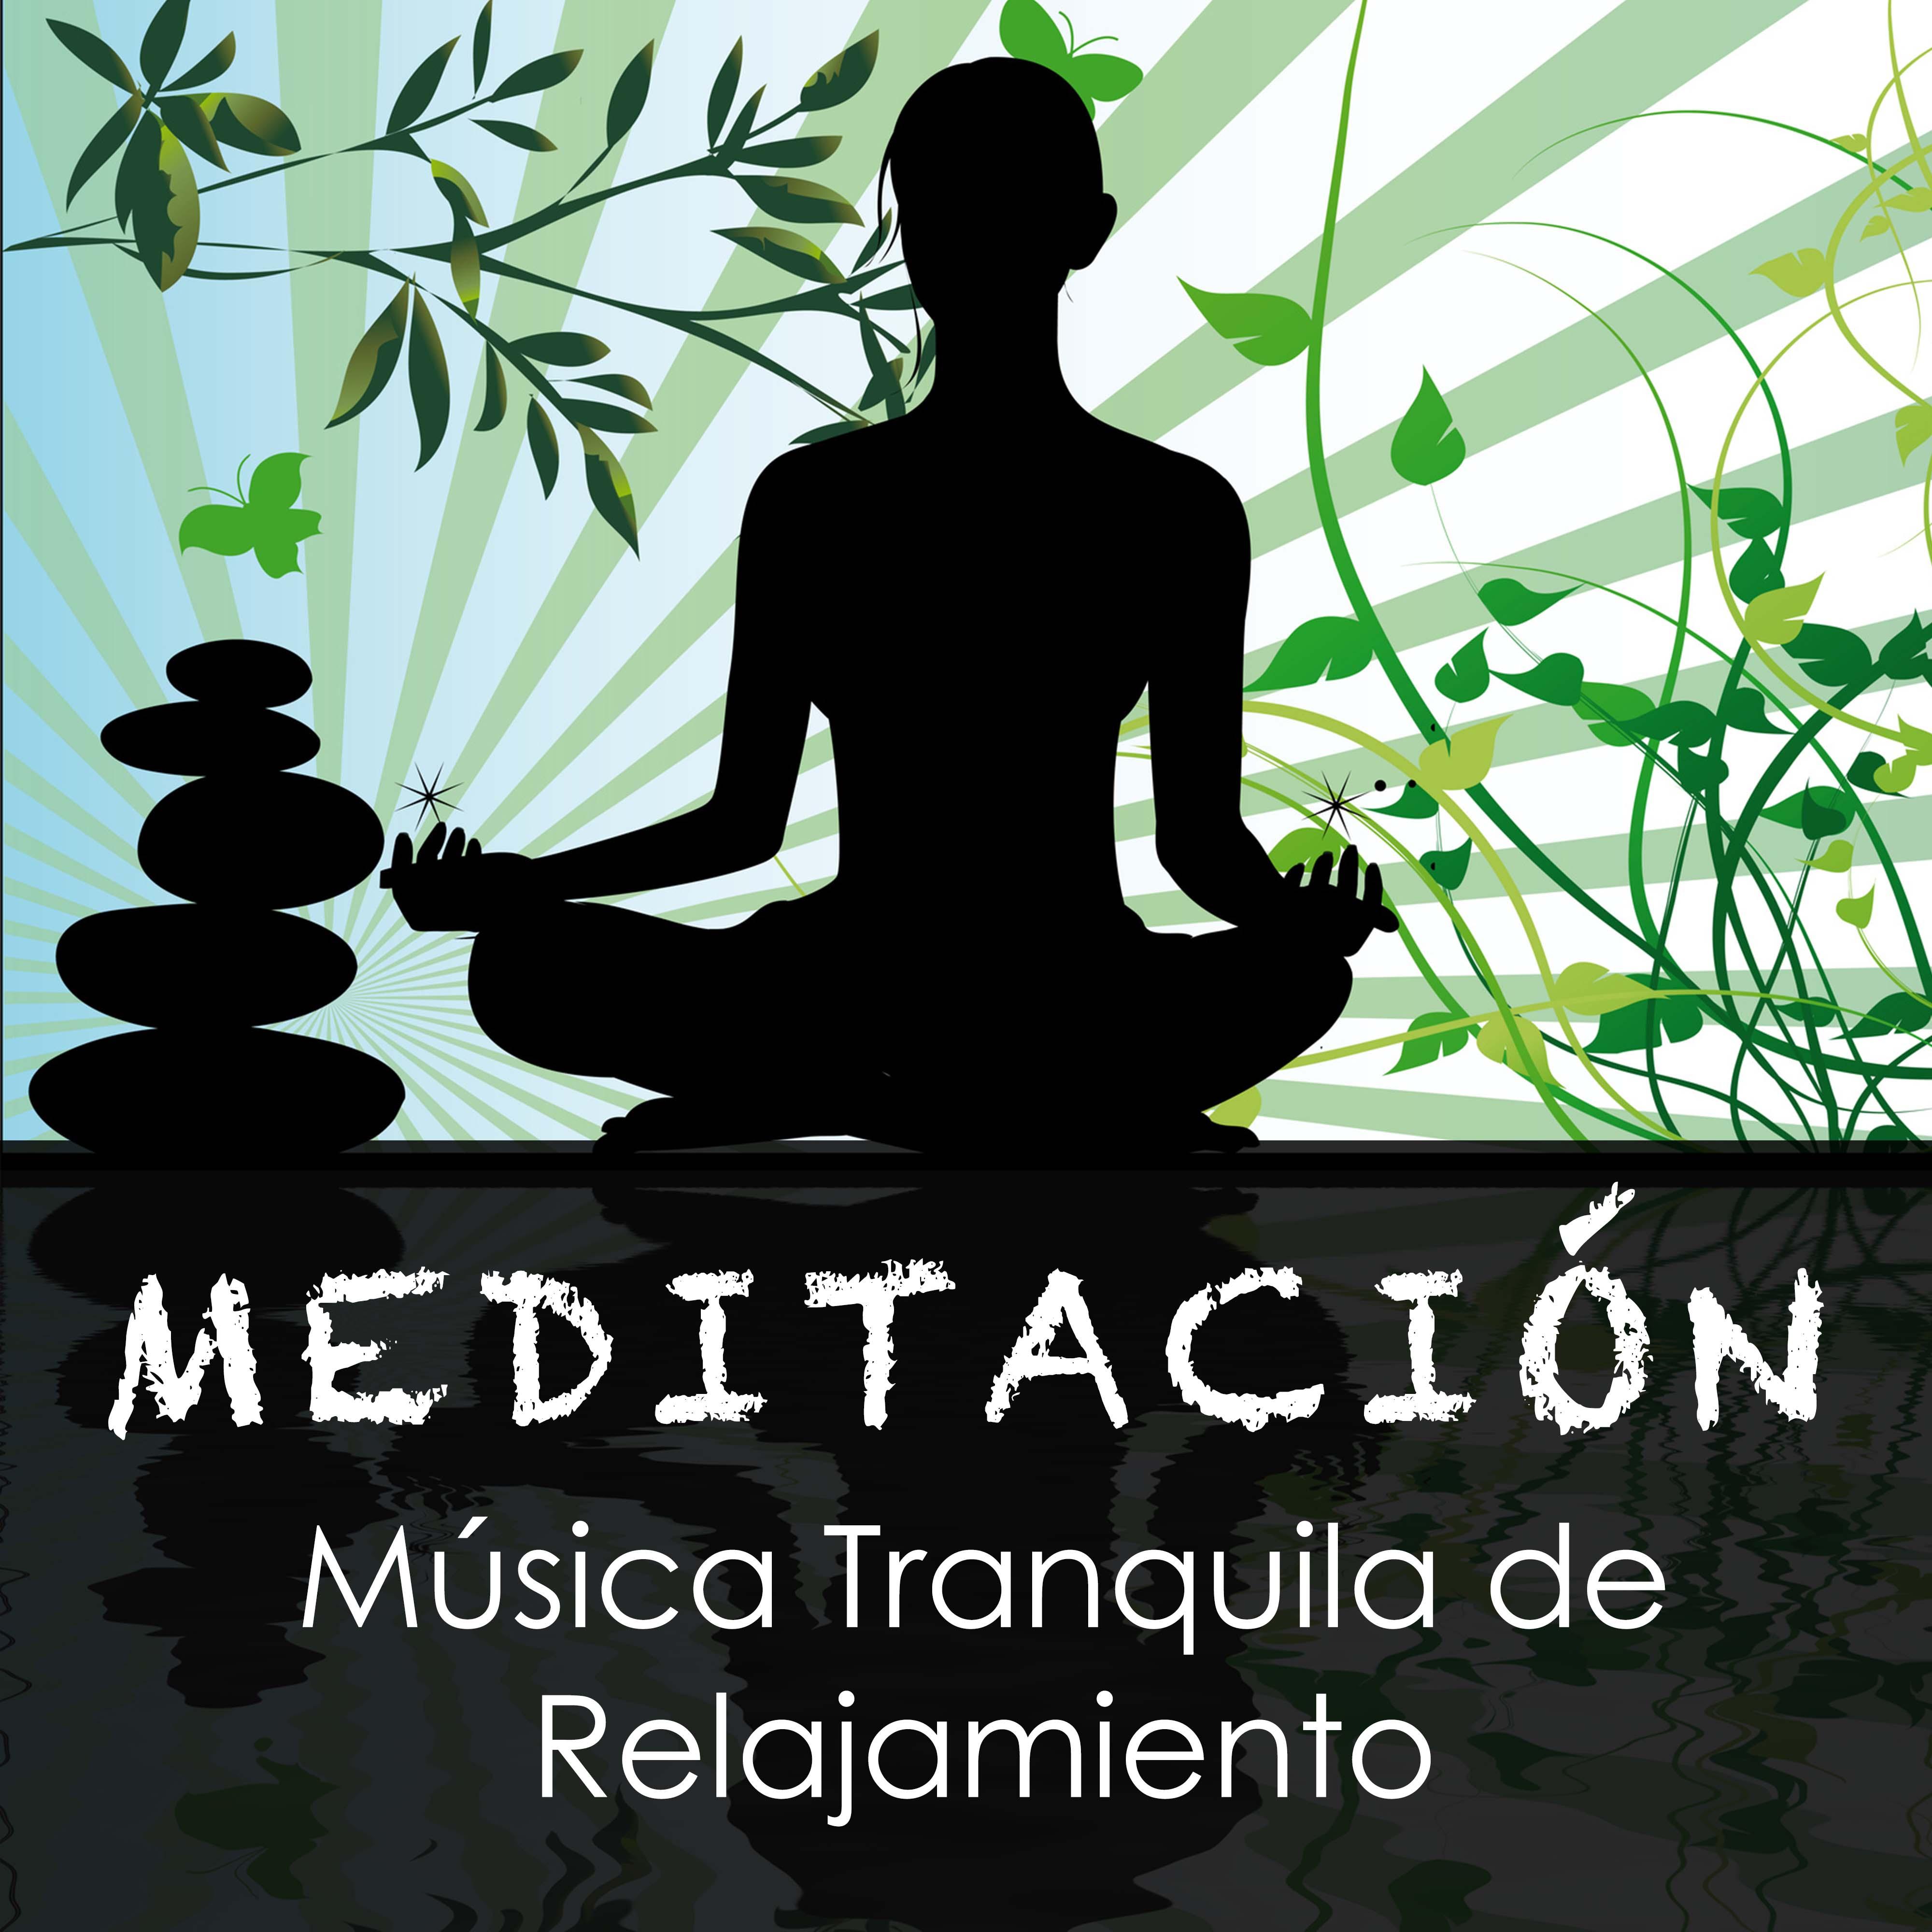 Meditacio n  Musica Tranquila de Relajamiento